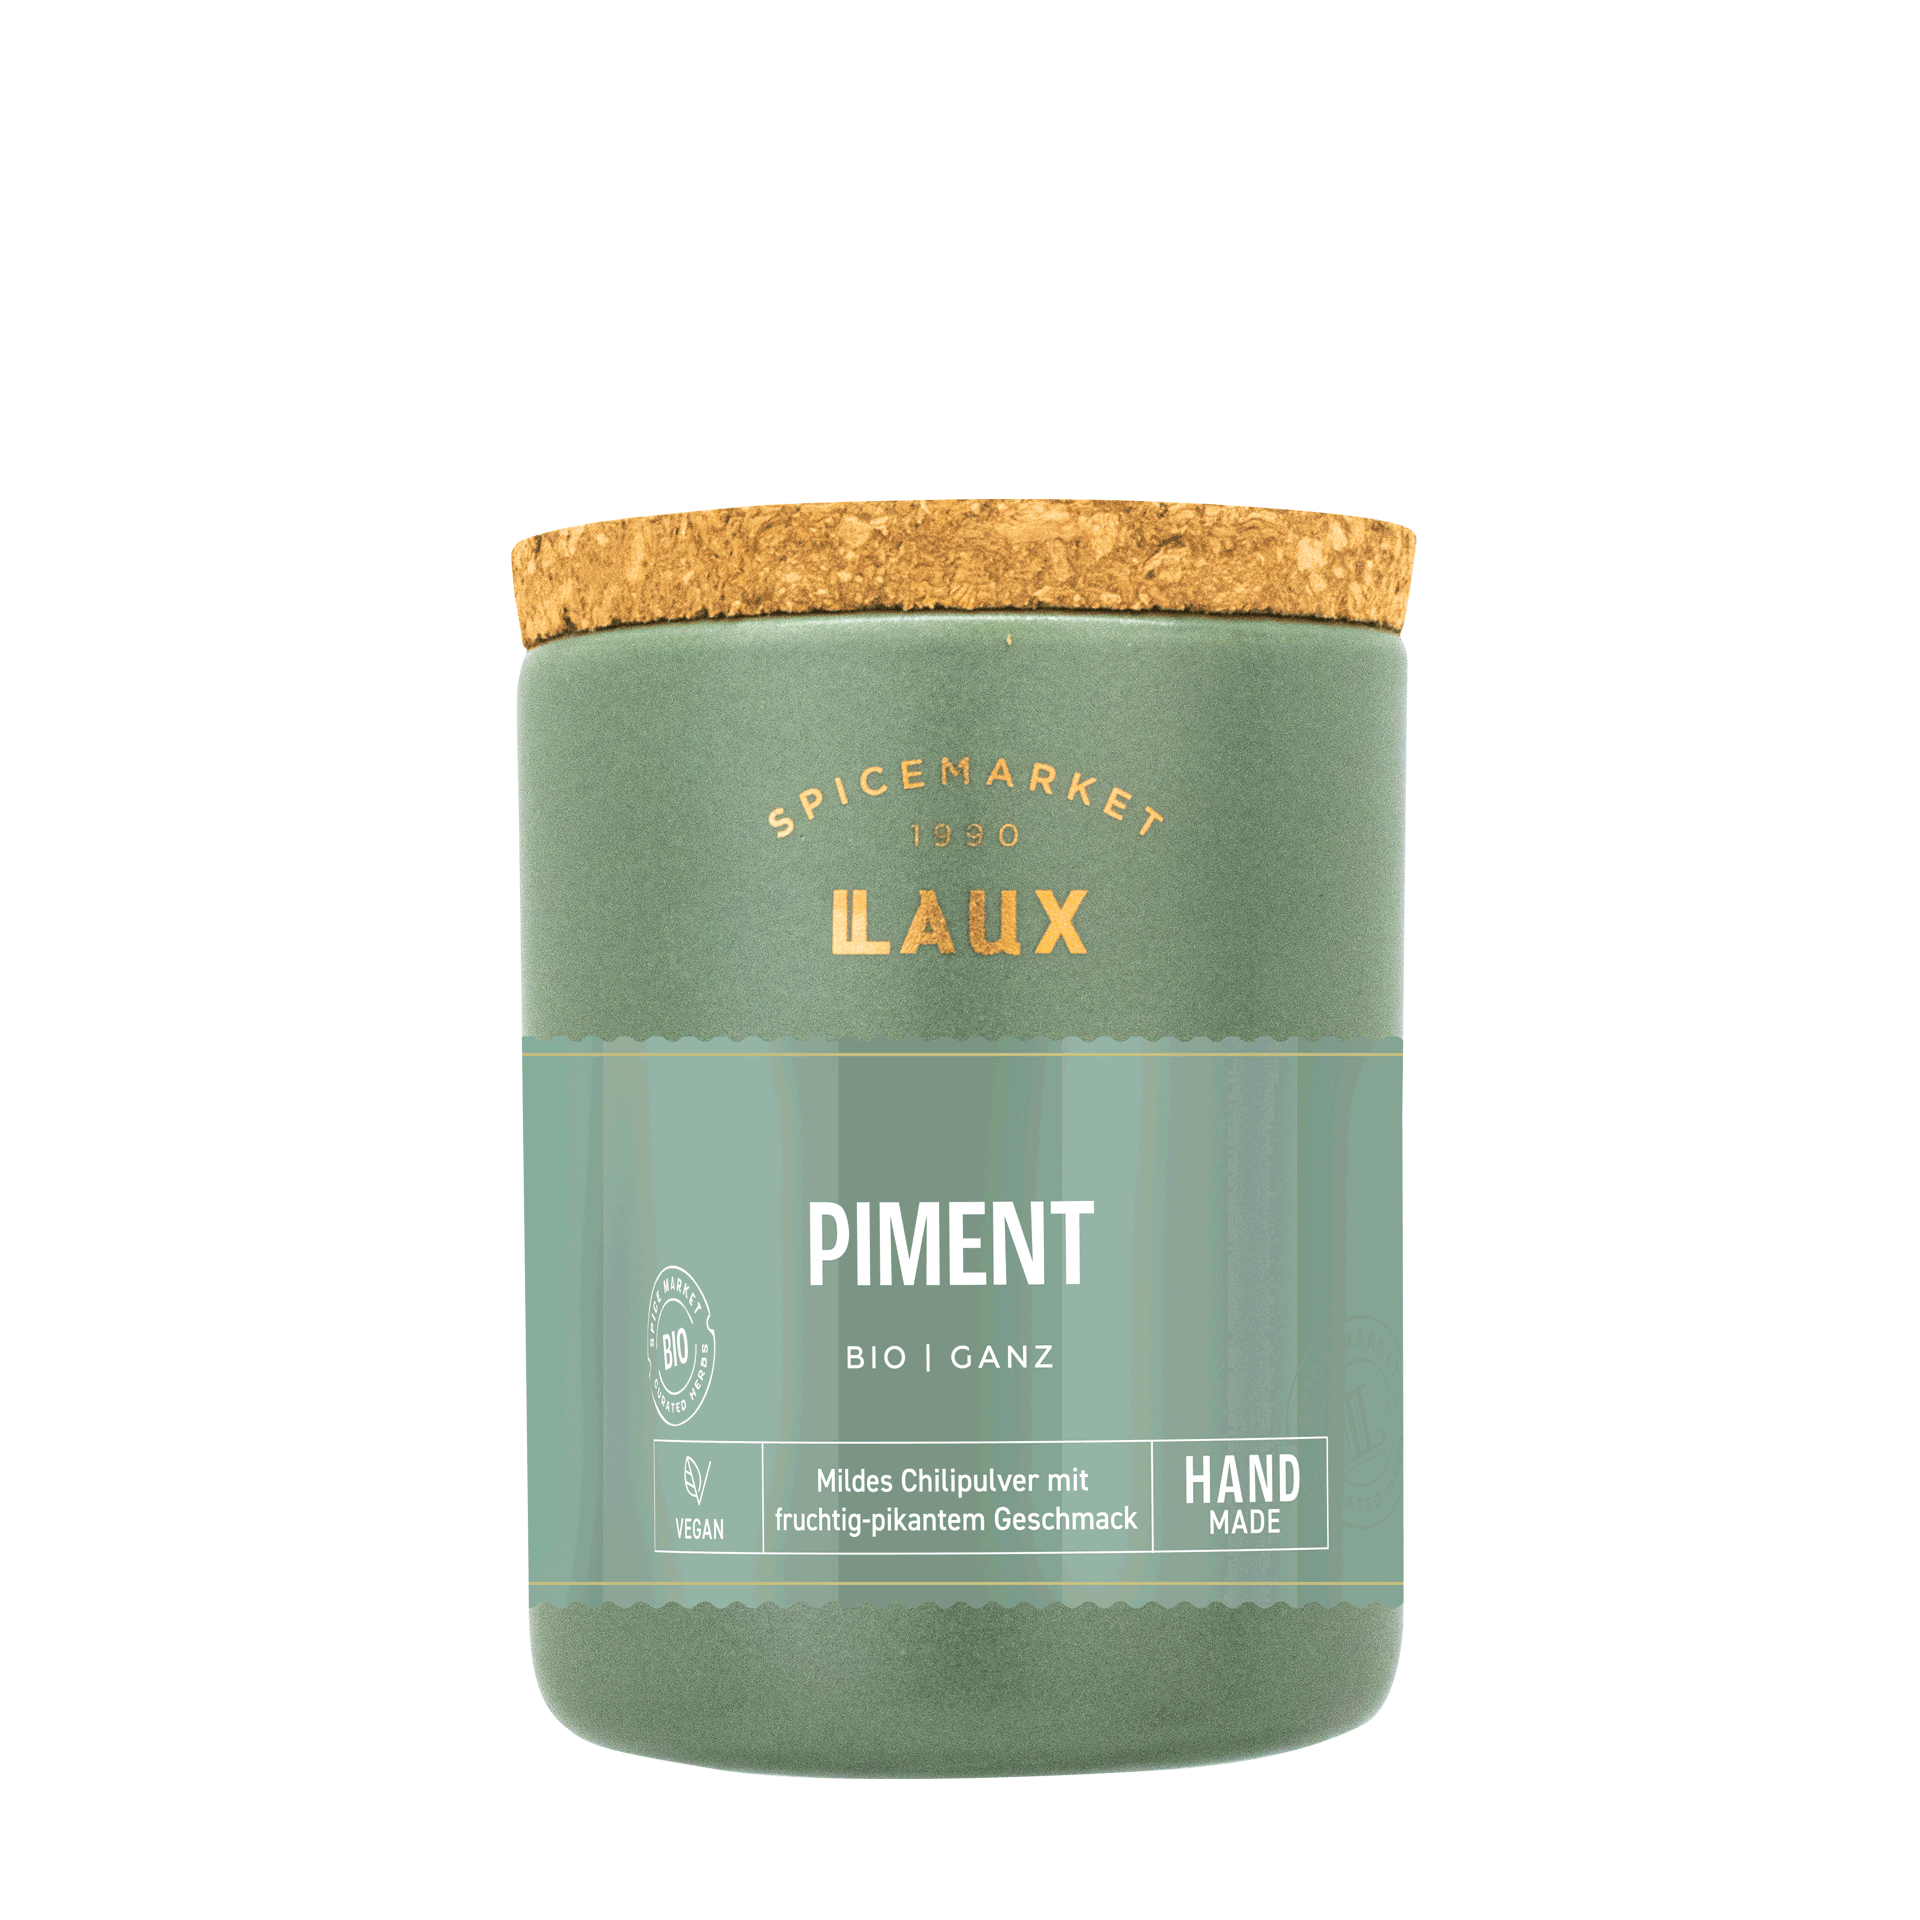 Piment im Keramiktopf